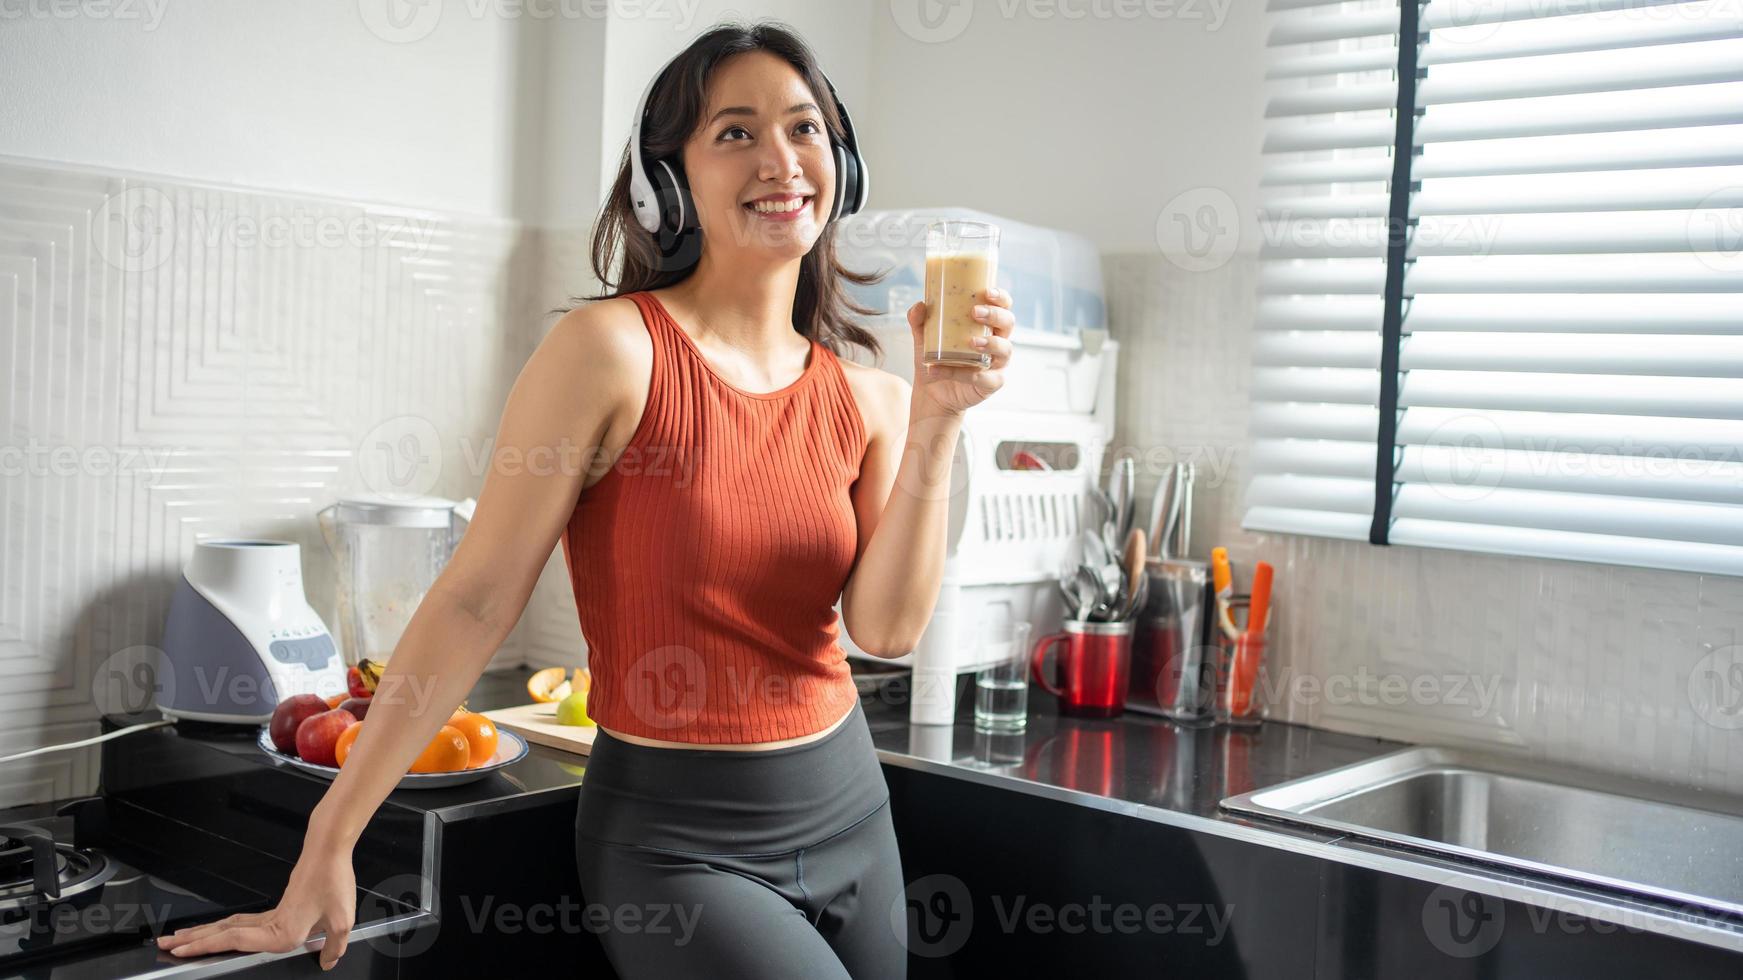 mooie jonge vrouw die smoothies maakt en drinkt van fruit in de keuken thuis terwijl ze naar muziek luistert via een koptelefoon - lifestyle concepten foto